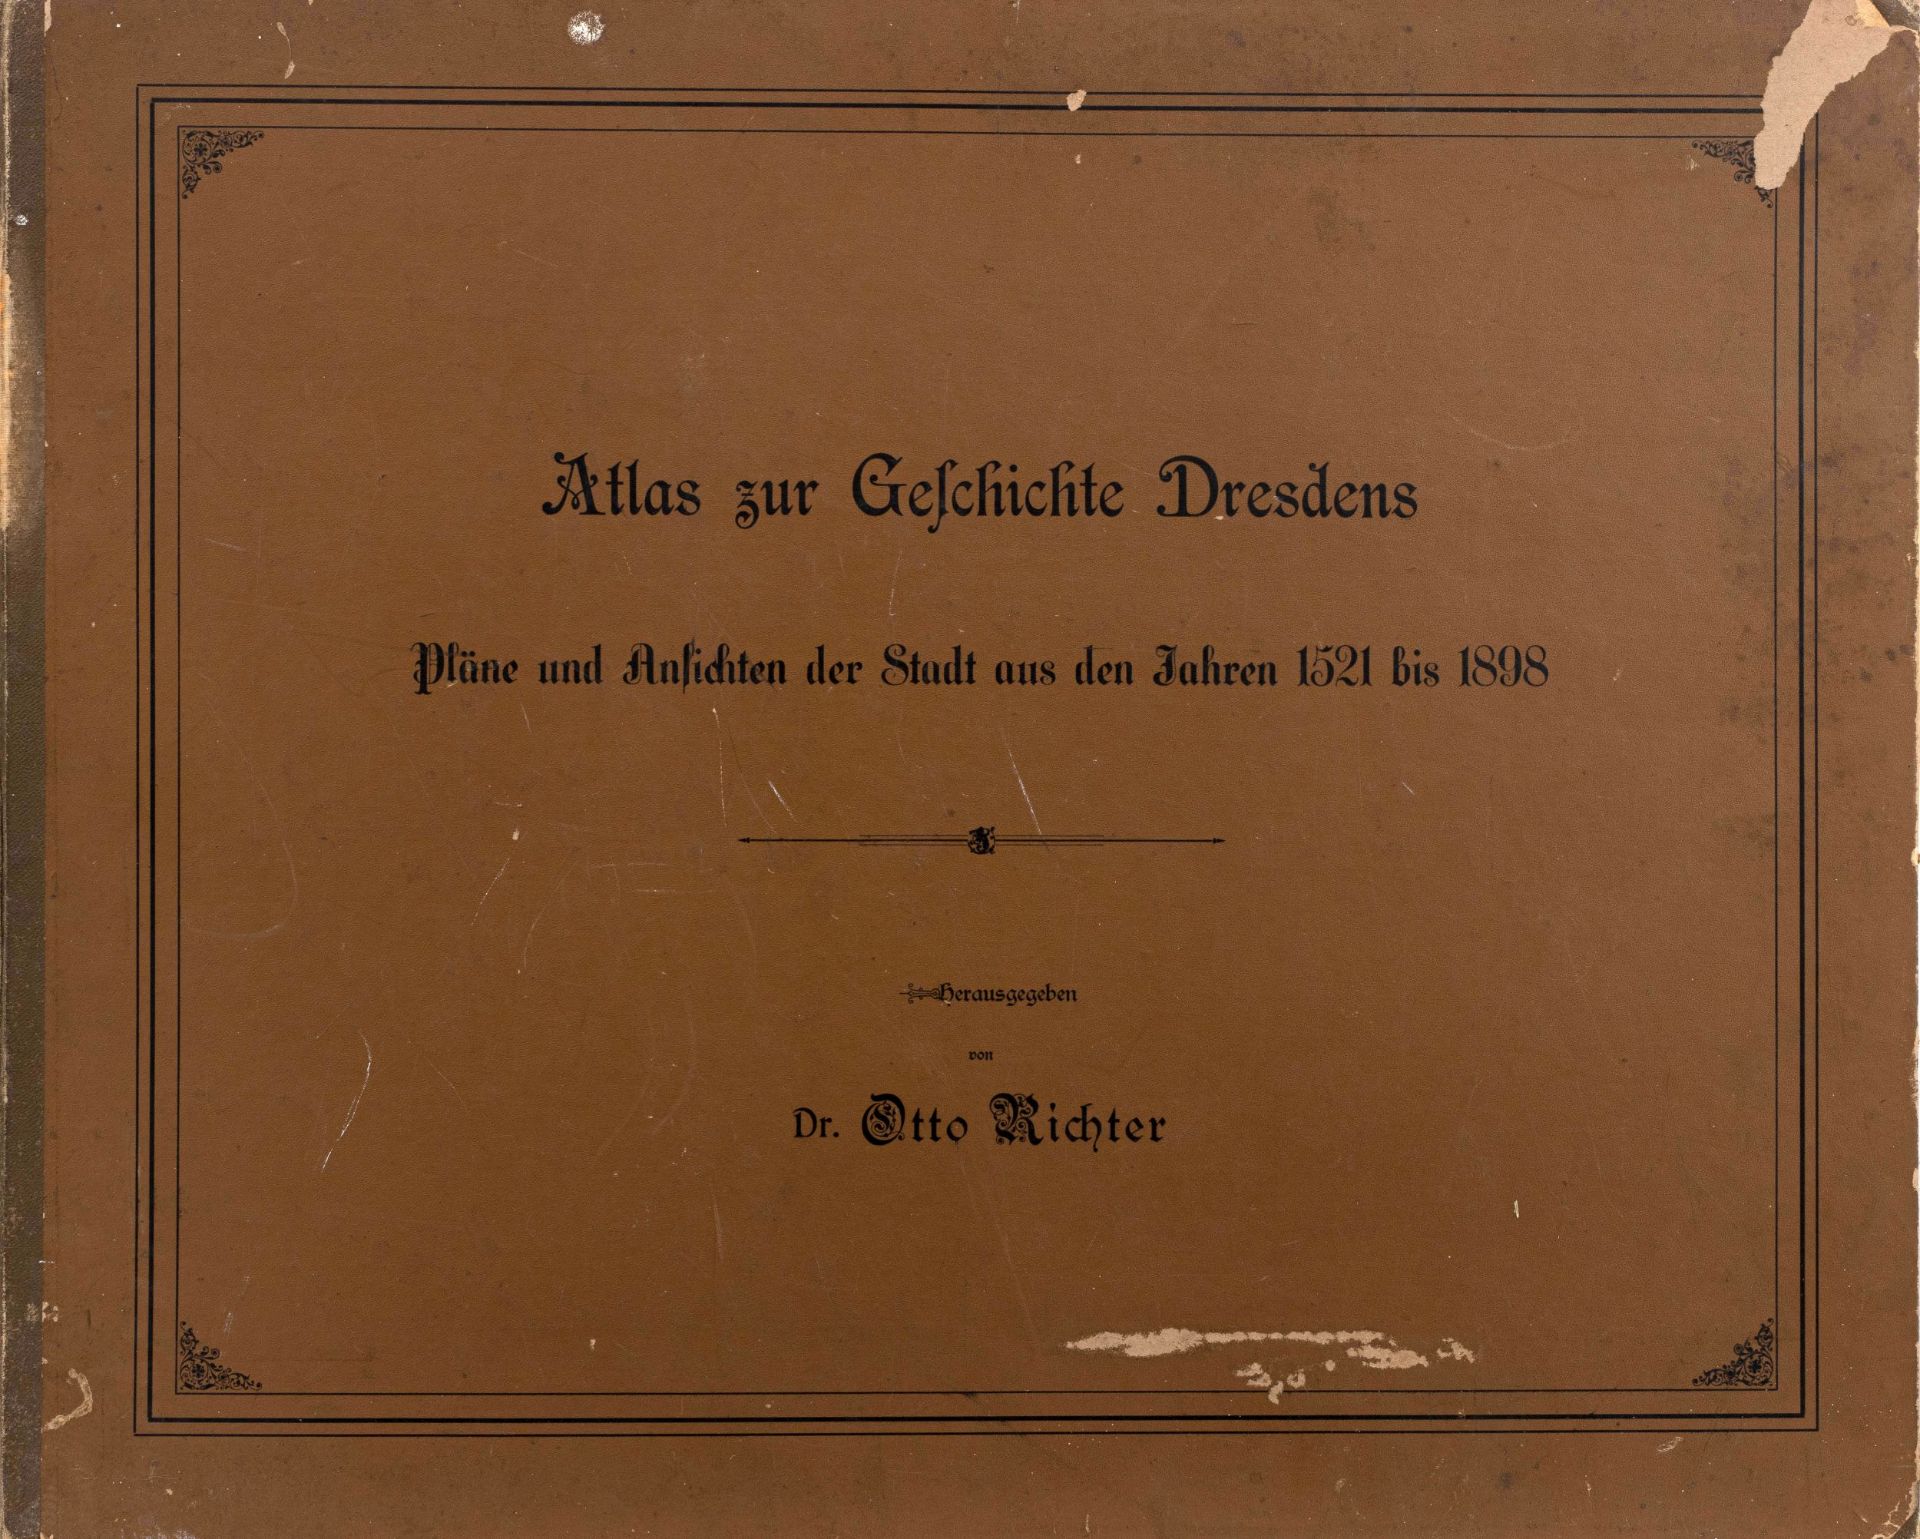 Atlas zur Geschichte Dresdens. Pläne und Ansichten der Stadt aus den Jahren 1521 bis 1898